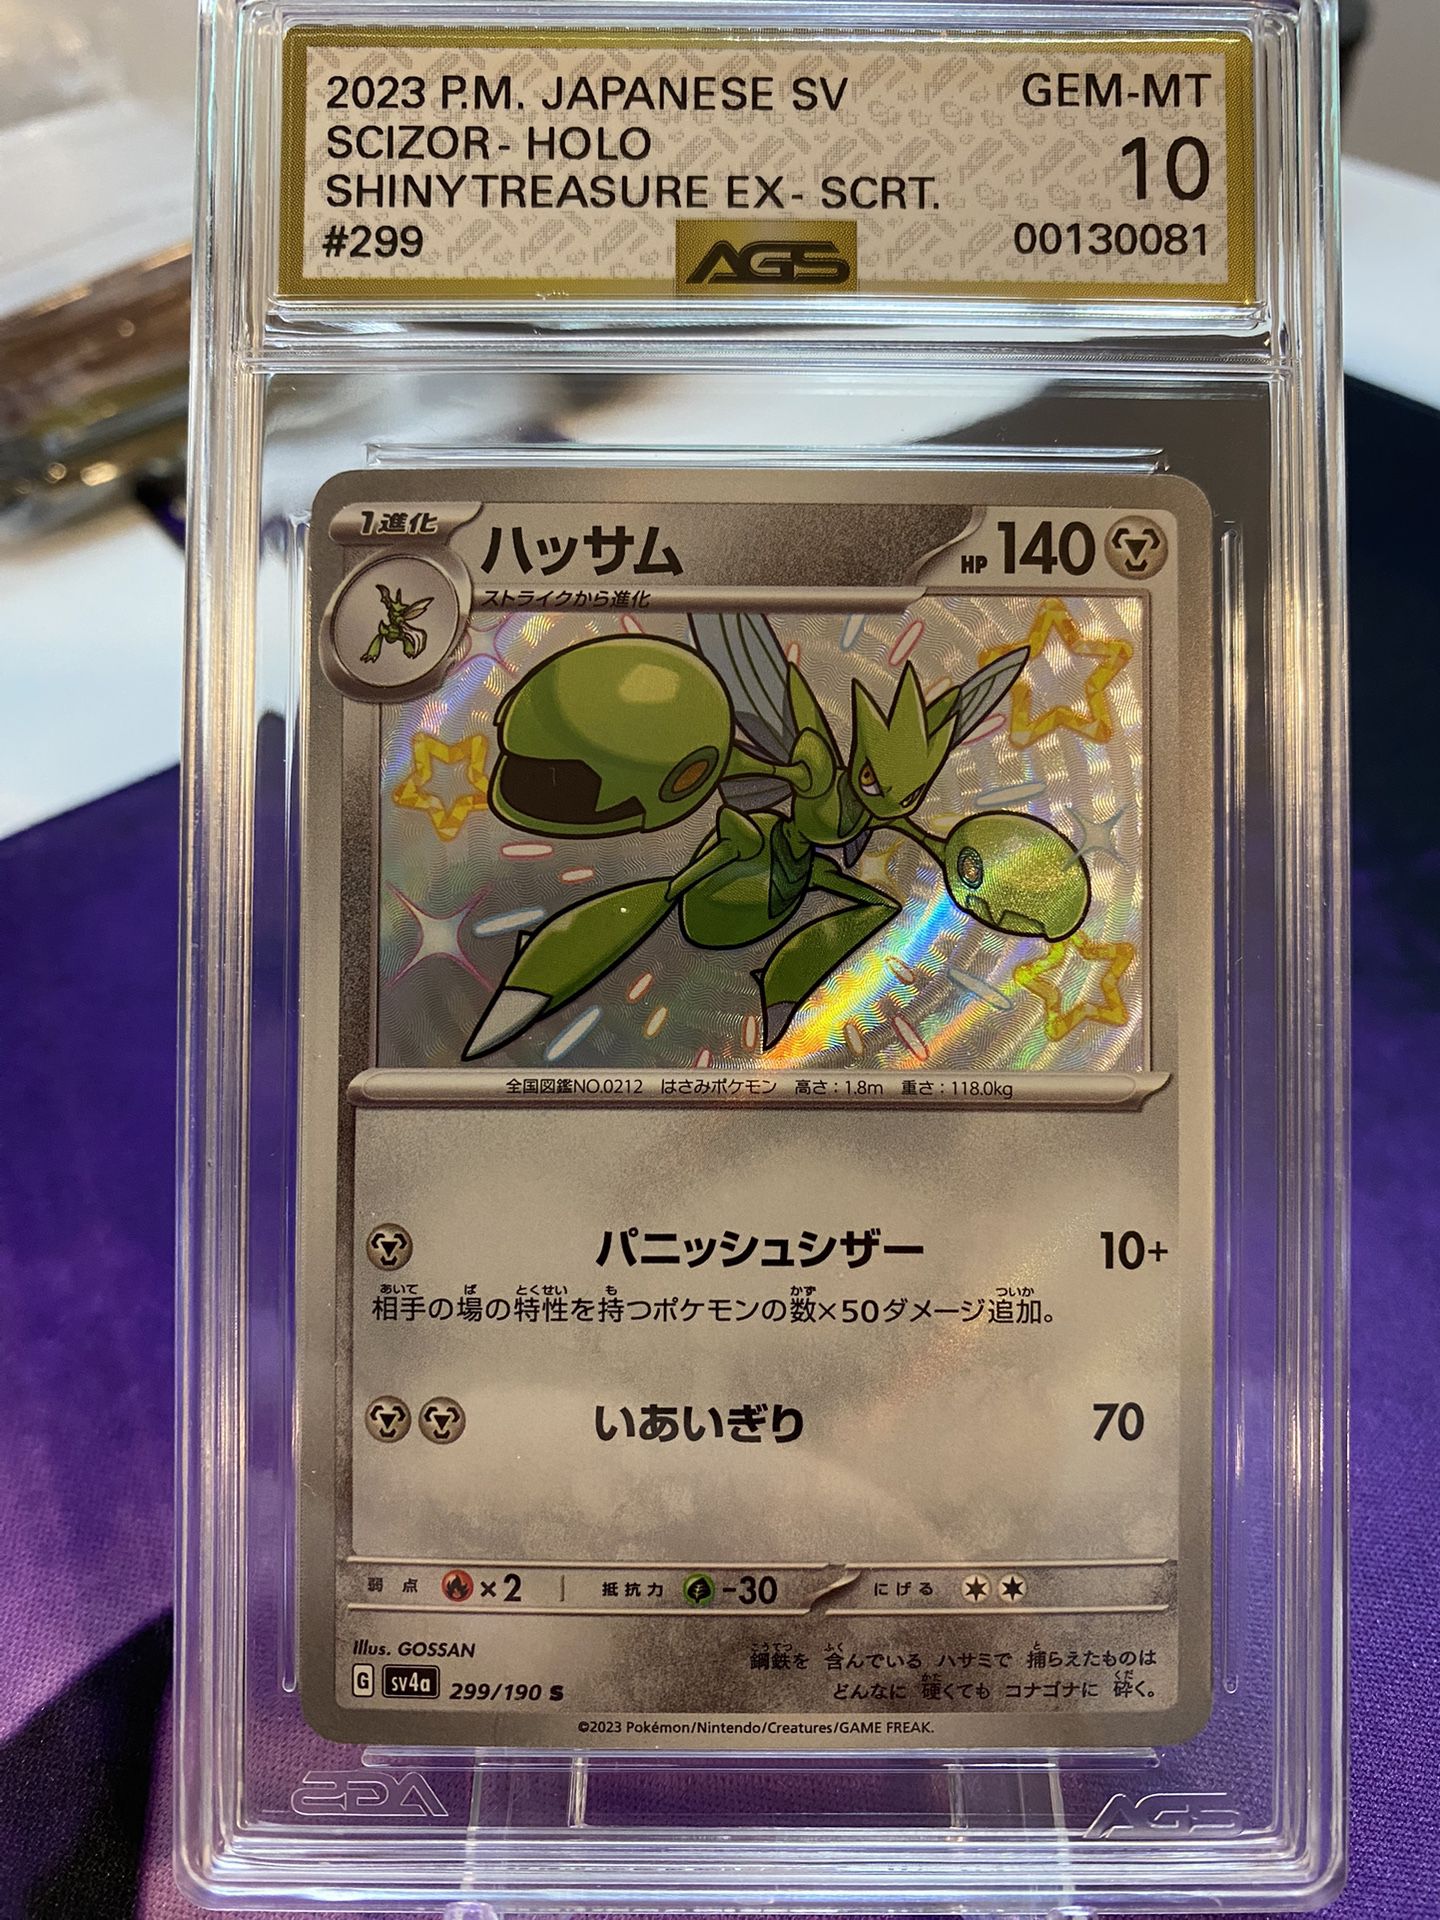 Japanese Pokemon TCG Scizor Shiny Treasures Ex #299 S Holo AGS Graded GEM-MT 10